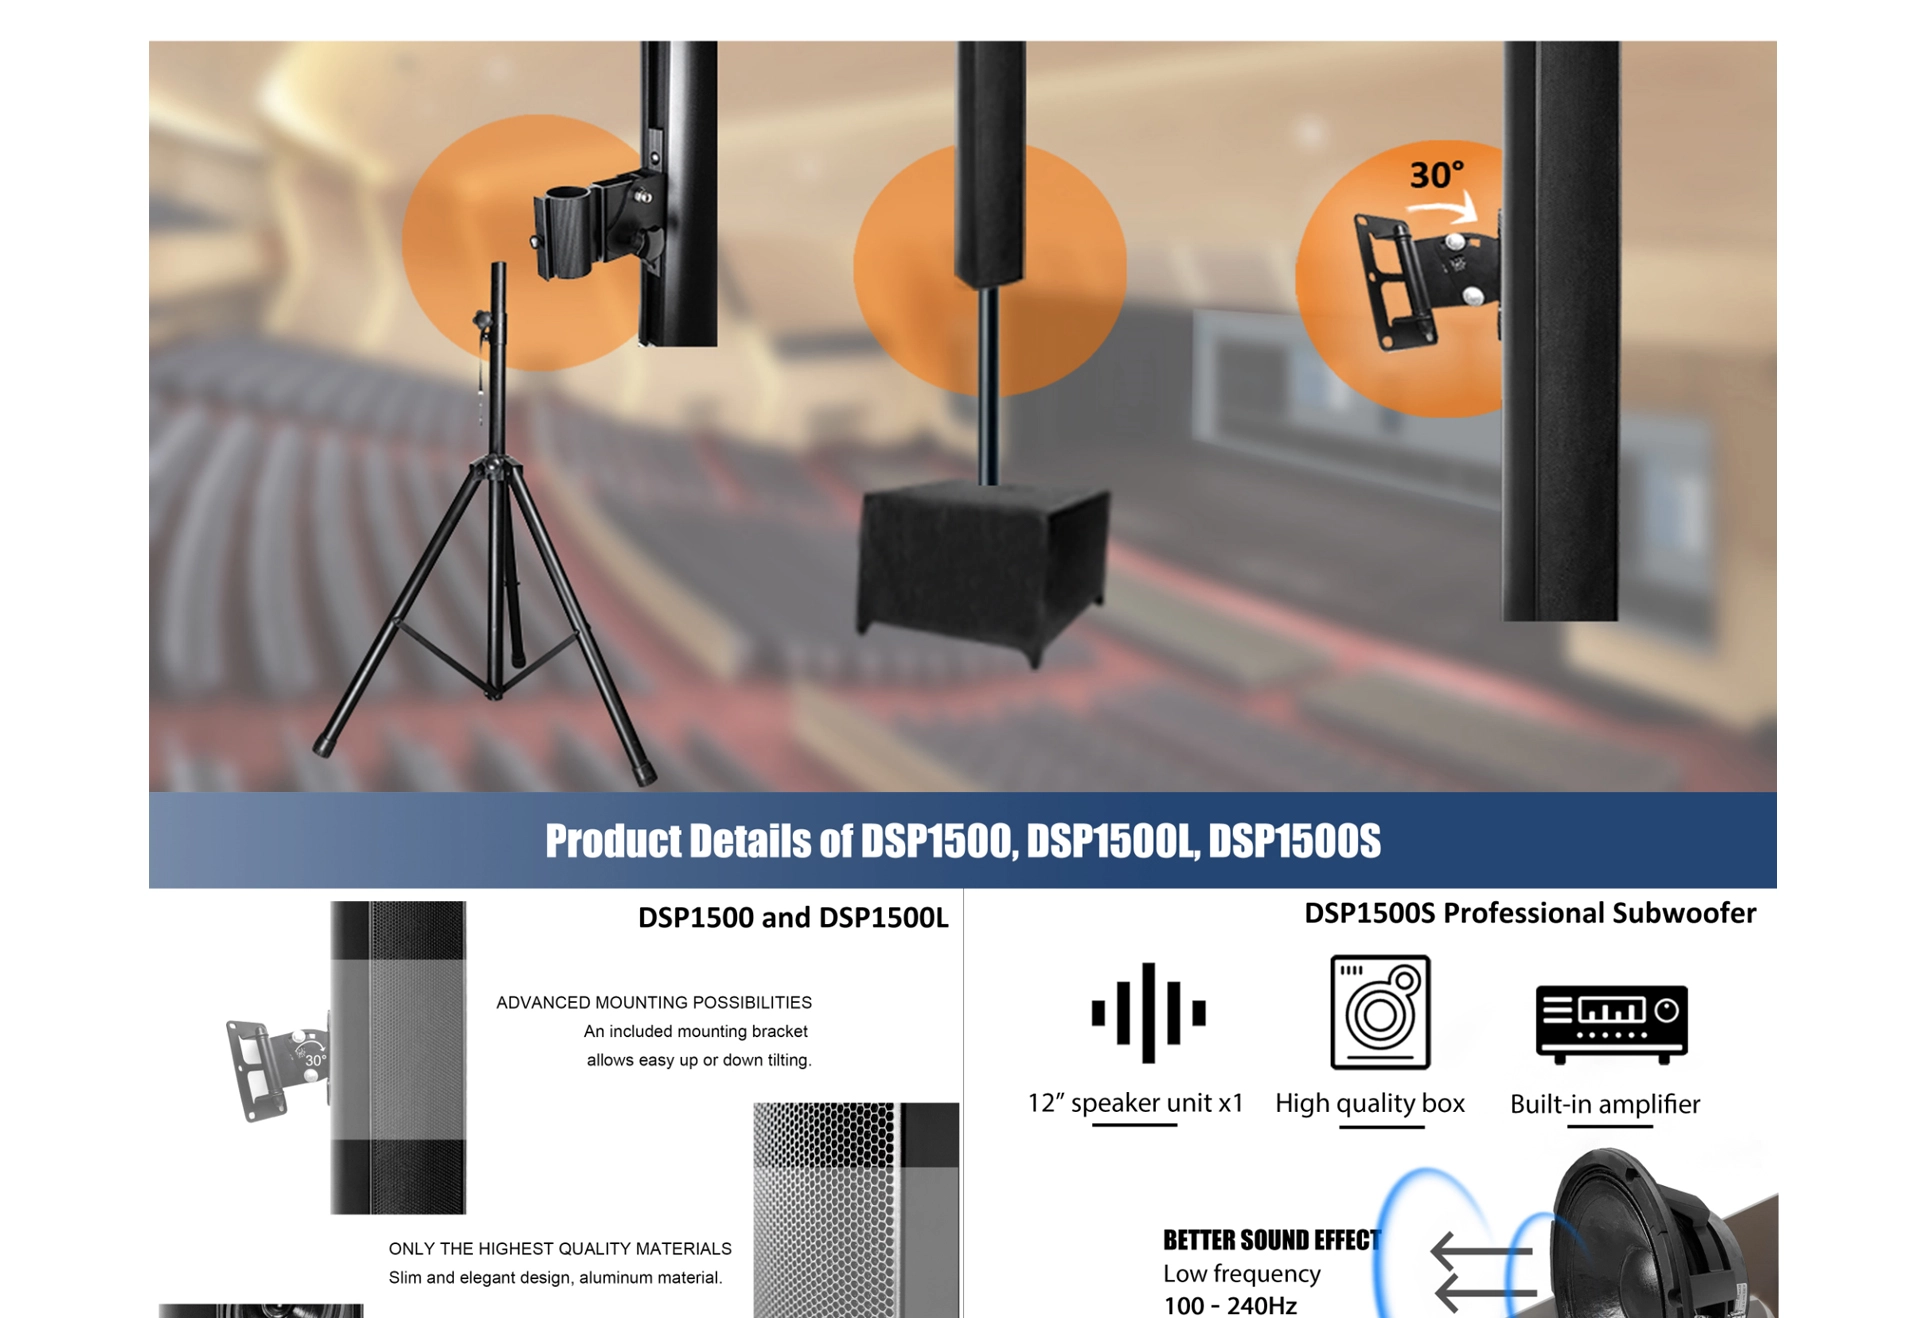 8x35W Array Digitally Steerable Speakers